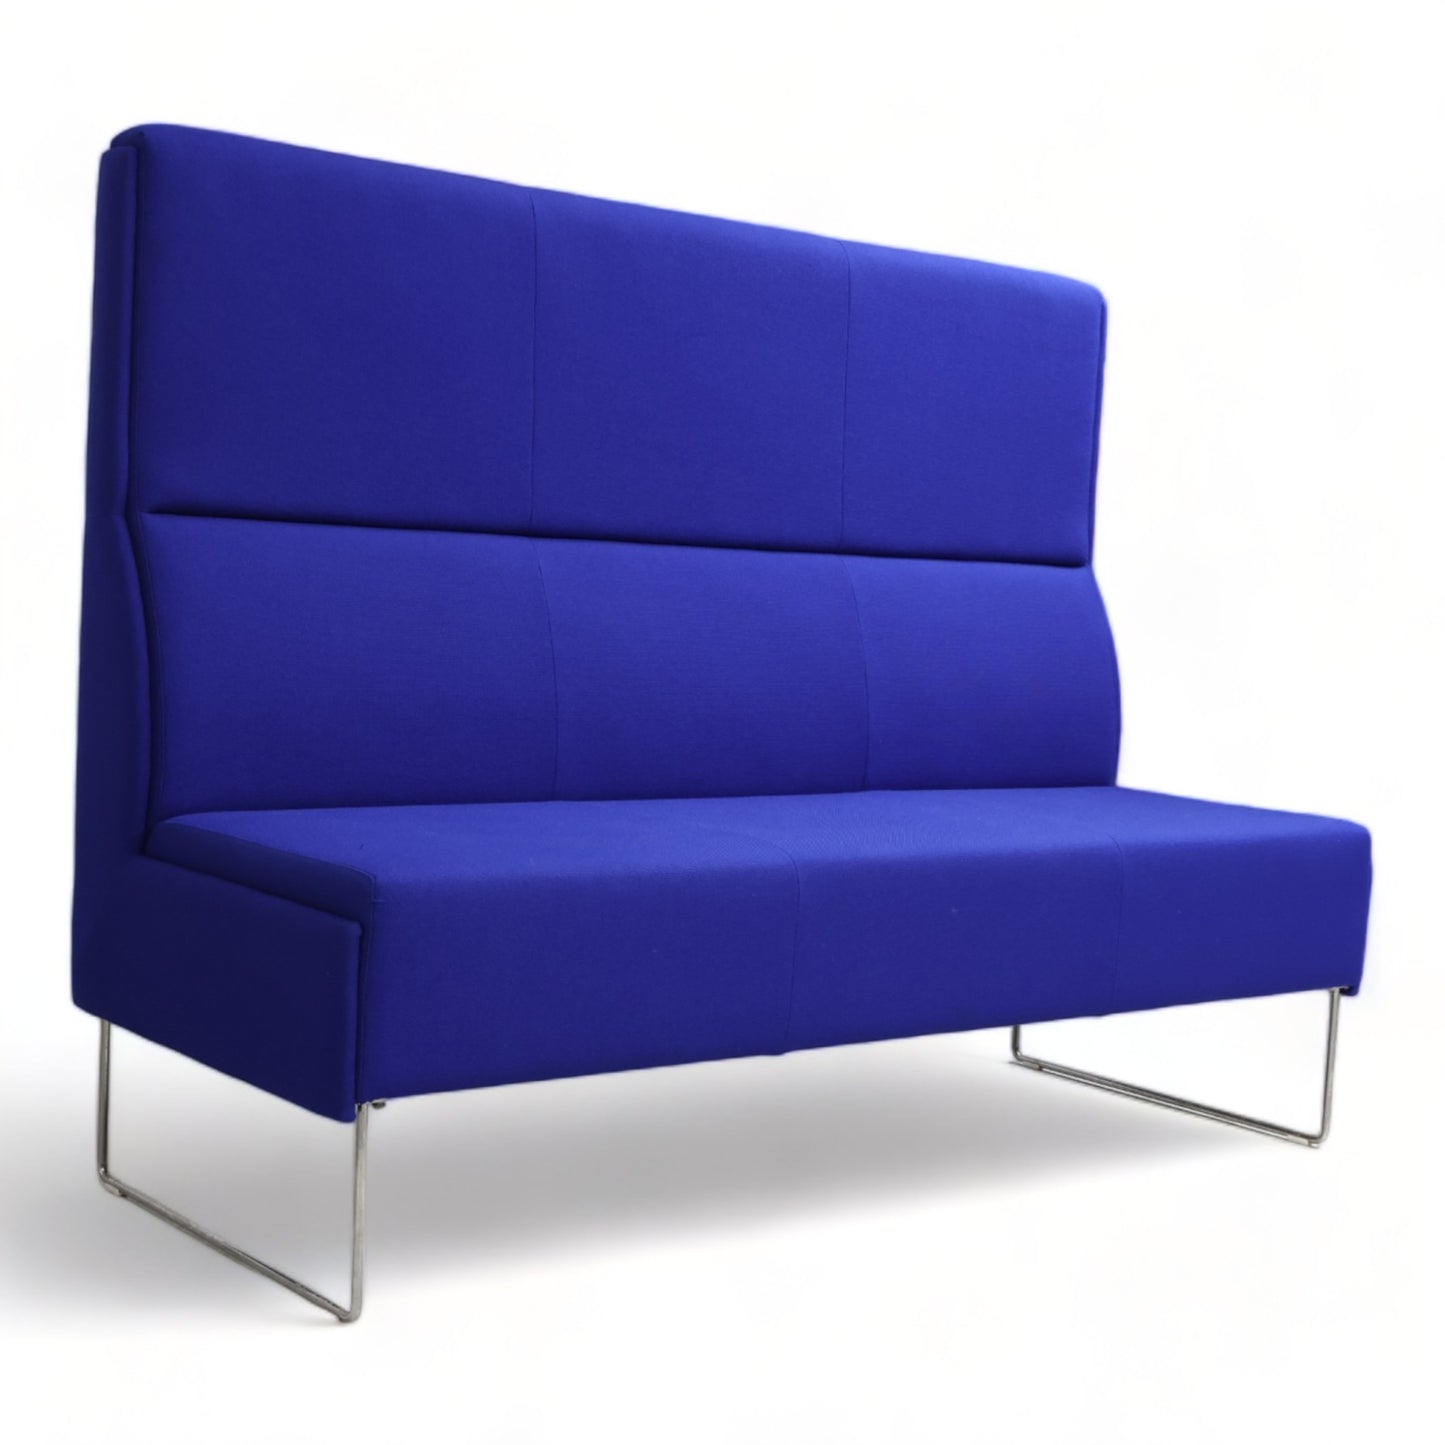 Nyrenset | Blå VAD Pivot 3-seter loungesofa